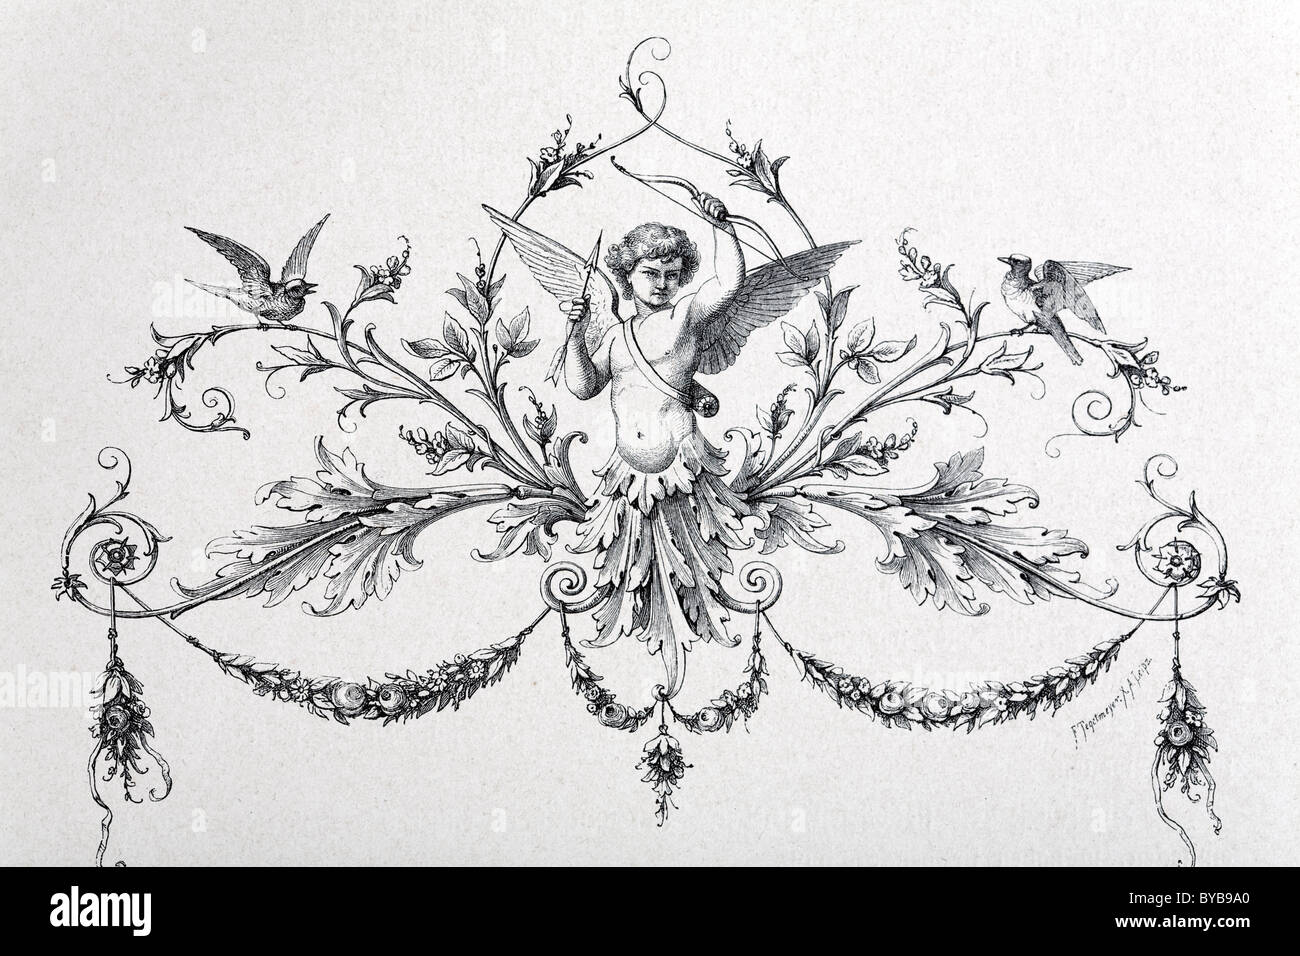 Vignette mit Amor und Ranken, Stahlstich, Buchillustration, Romeo und Julia von Shakespeare, Ausgabe aus dem Jahre 1890 Stockfoto